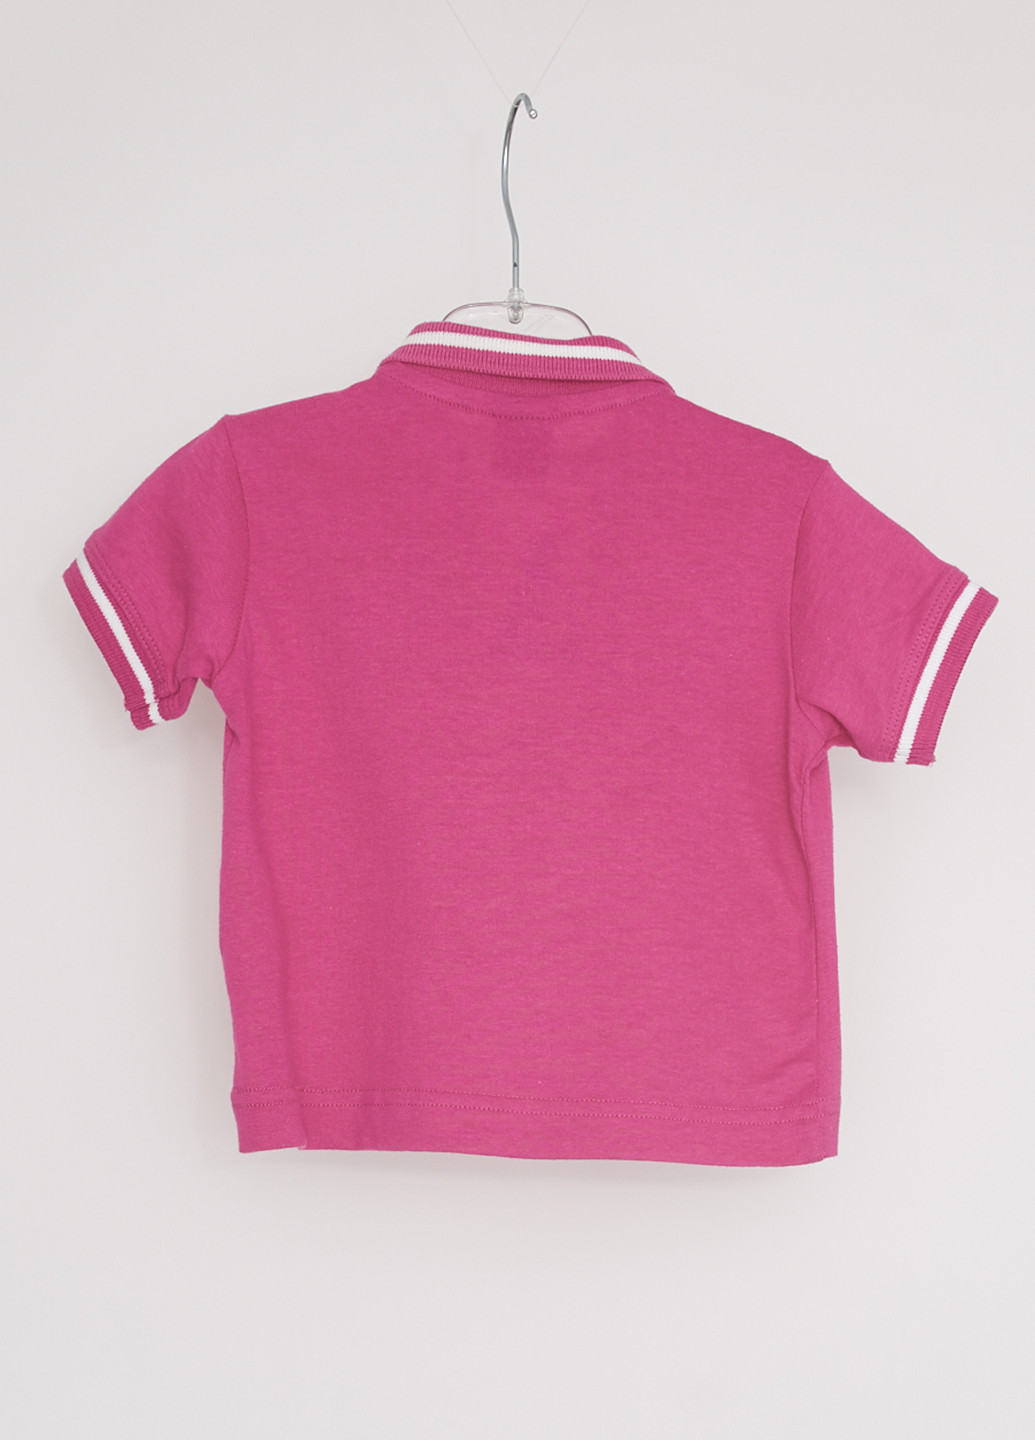 Фуксиновая (цвета Фуксия) детская футболка-поло для мальчика Birba однотонная